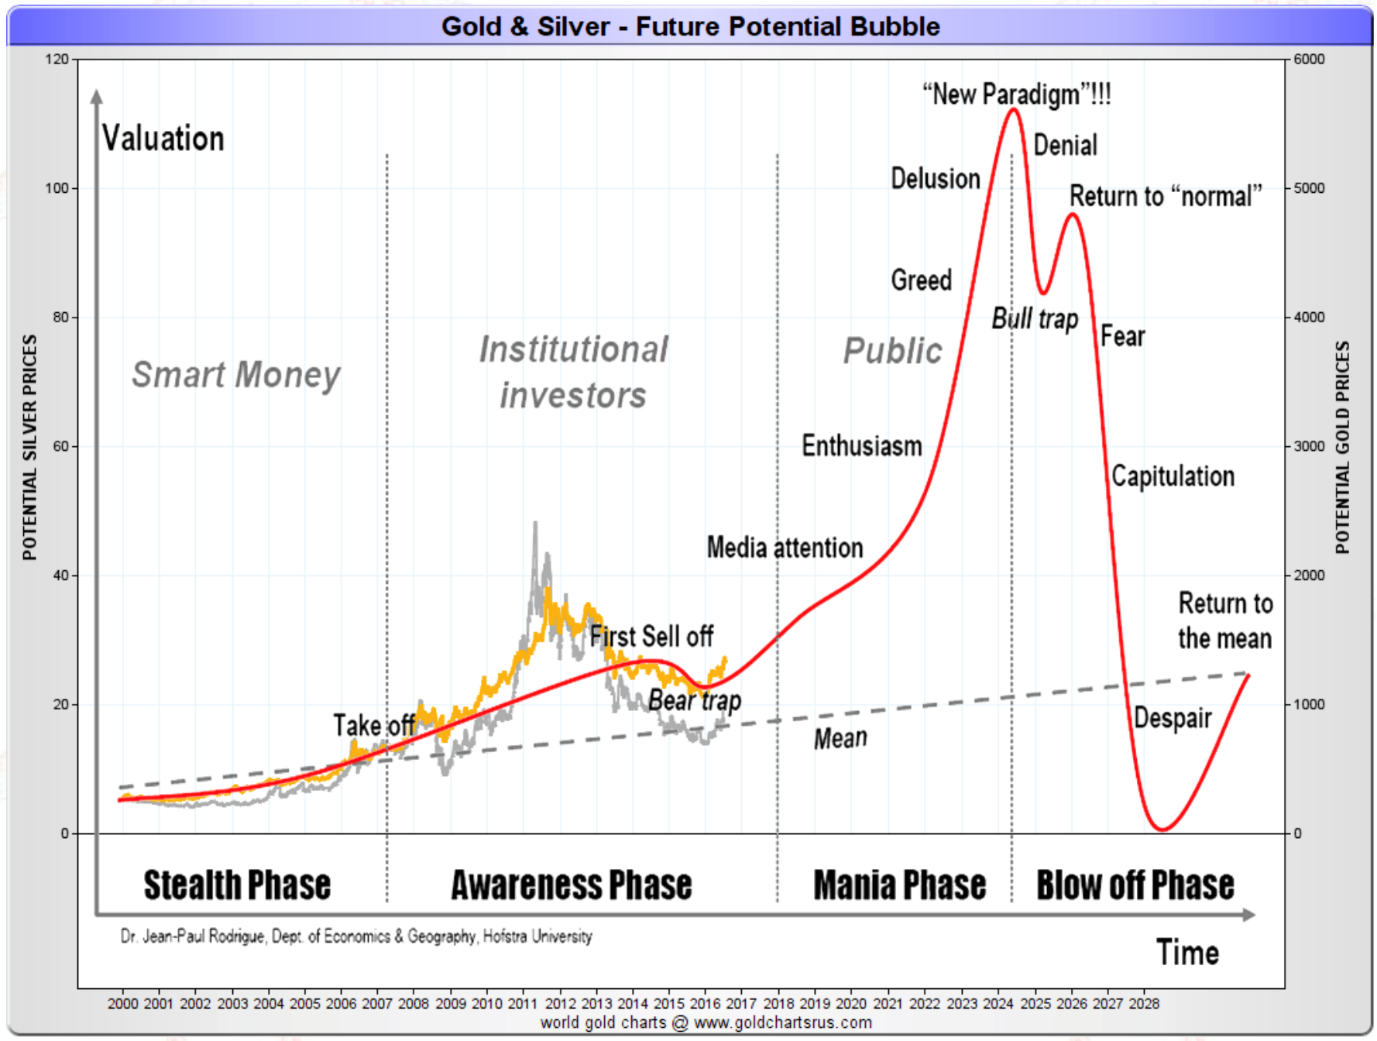 L'or et l'argent, des bulles potentielles